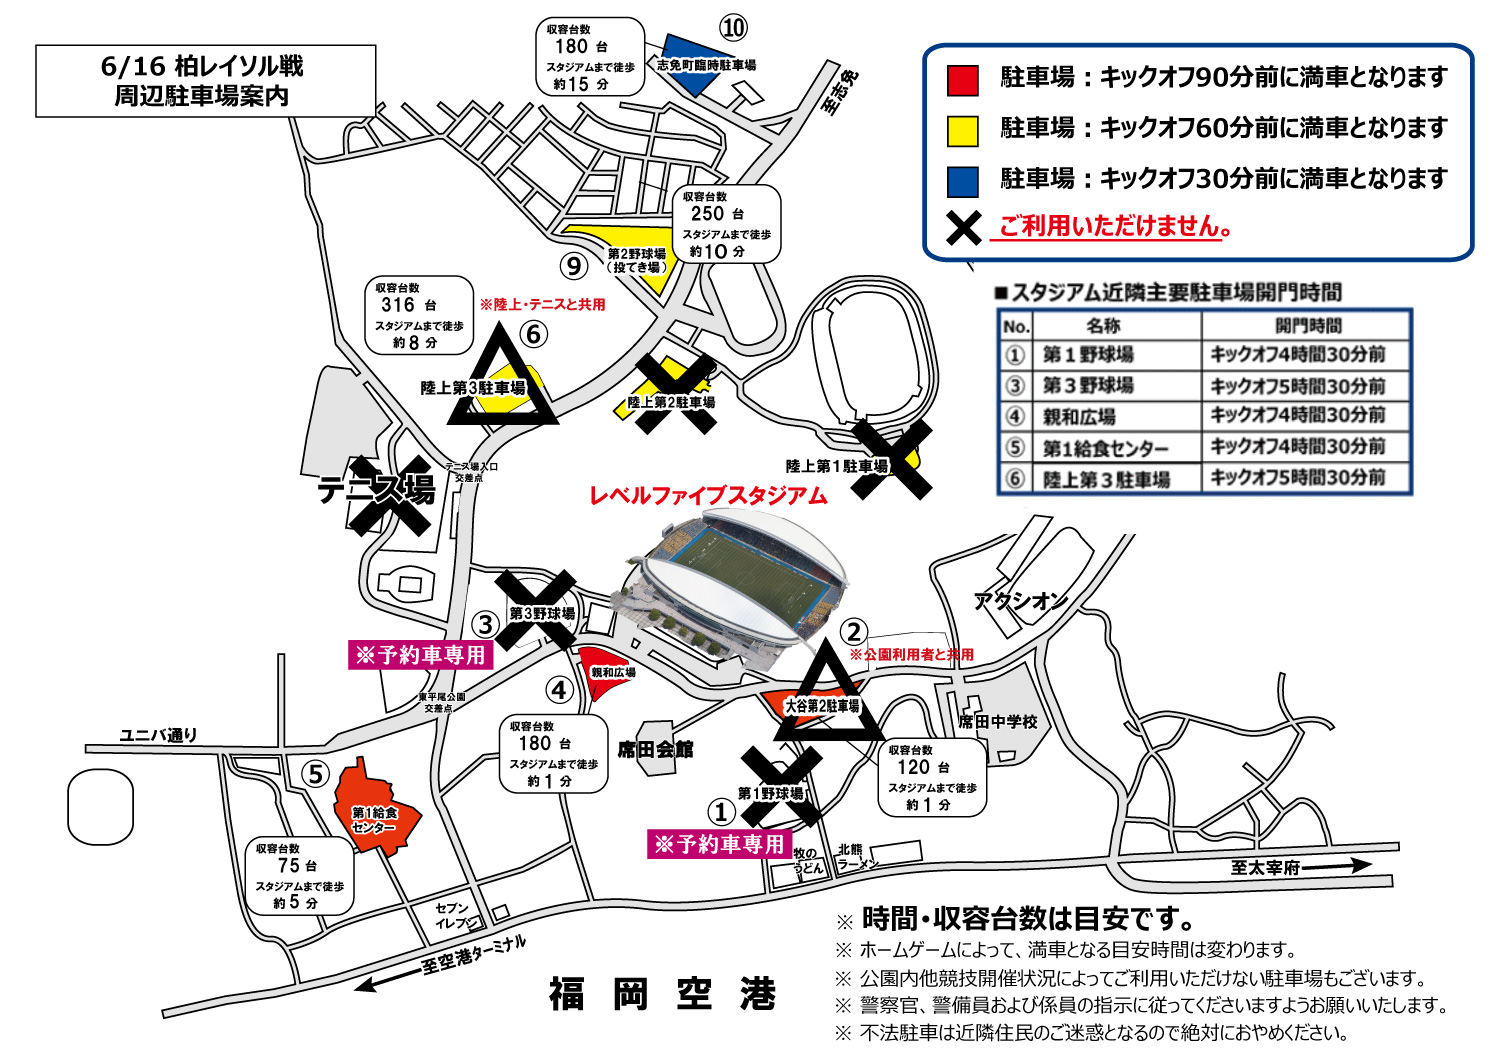 6 16 日 柏レイソル戦のレベスタ周辺駐車場について アビスパ福岡公式サイト Avispa Fukuoka Official Website